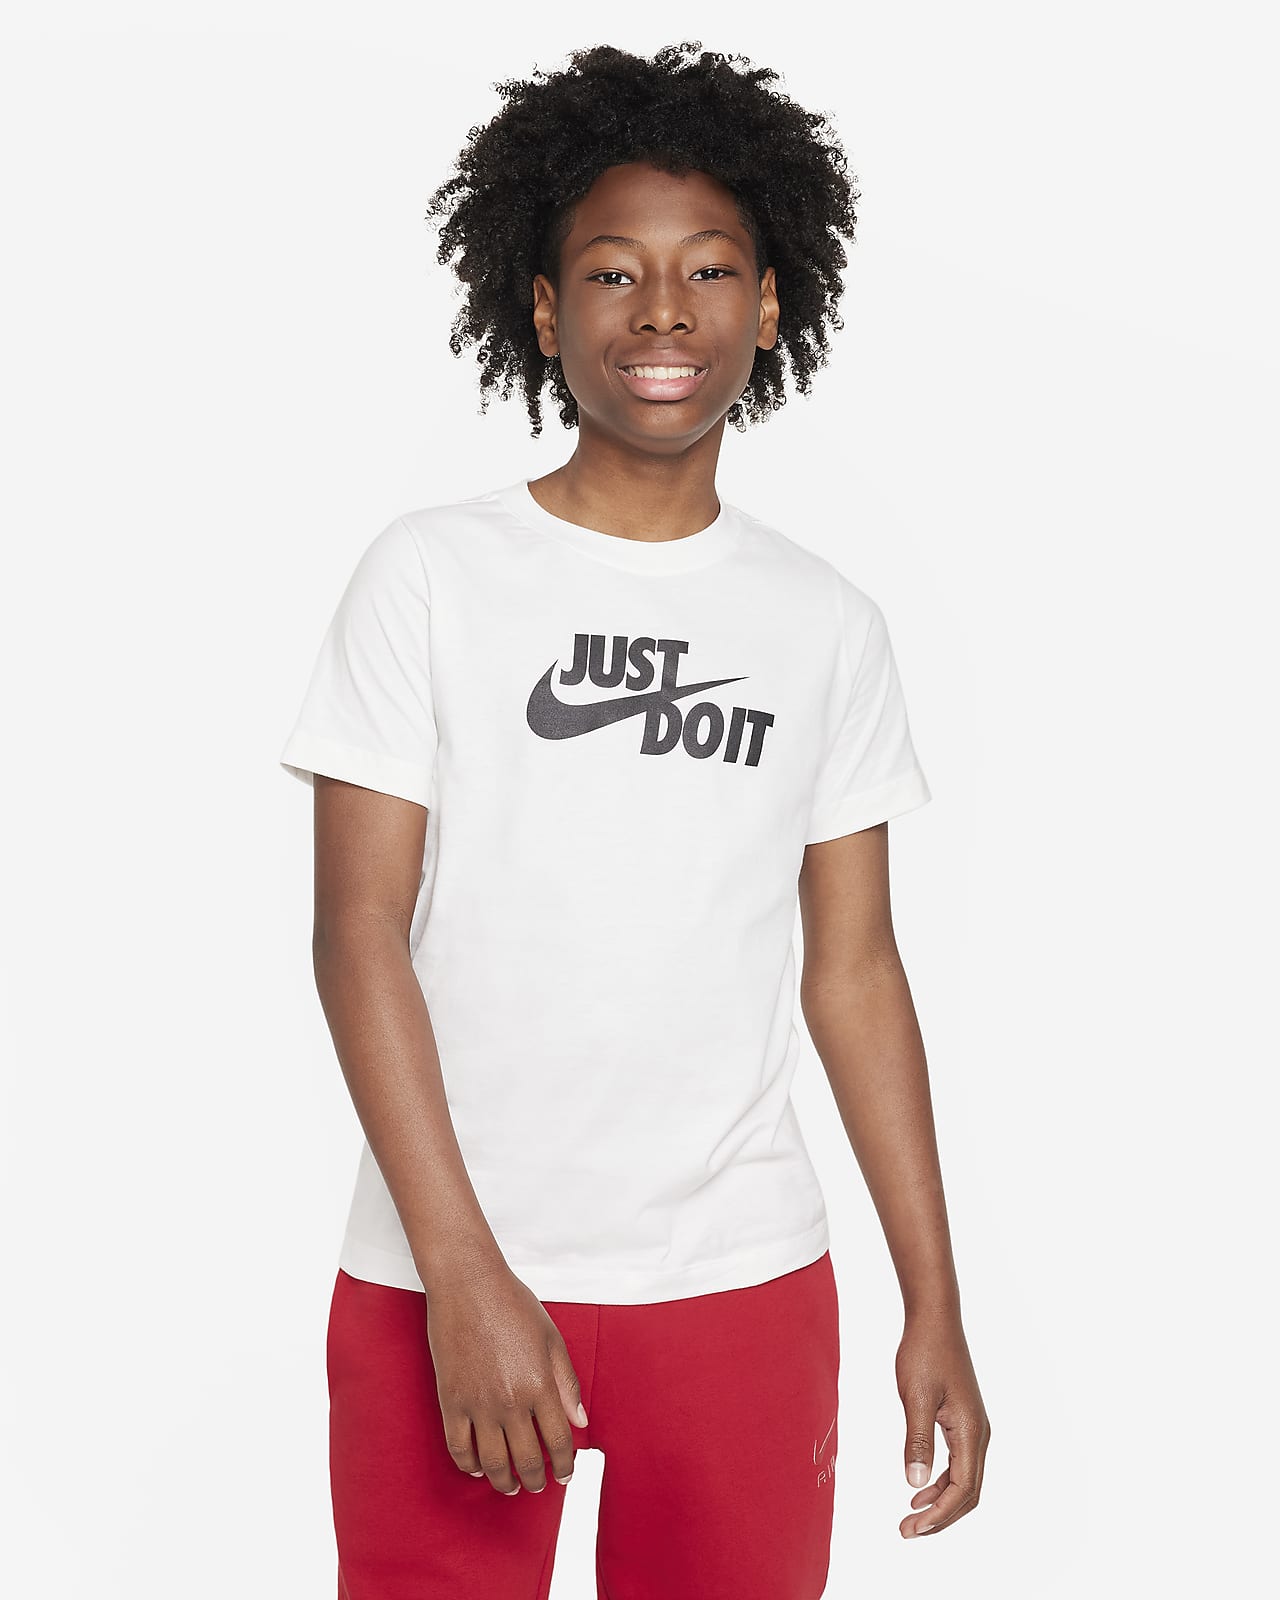 Nike Sportswear Camiseta - Niño/a